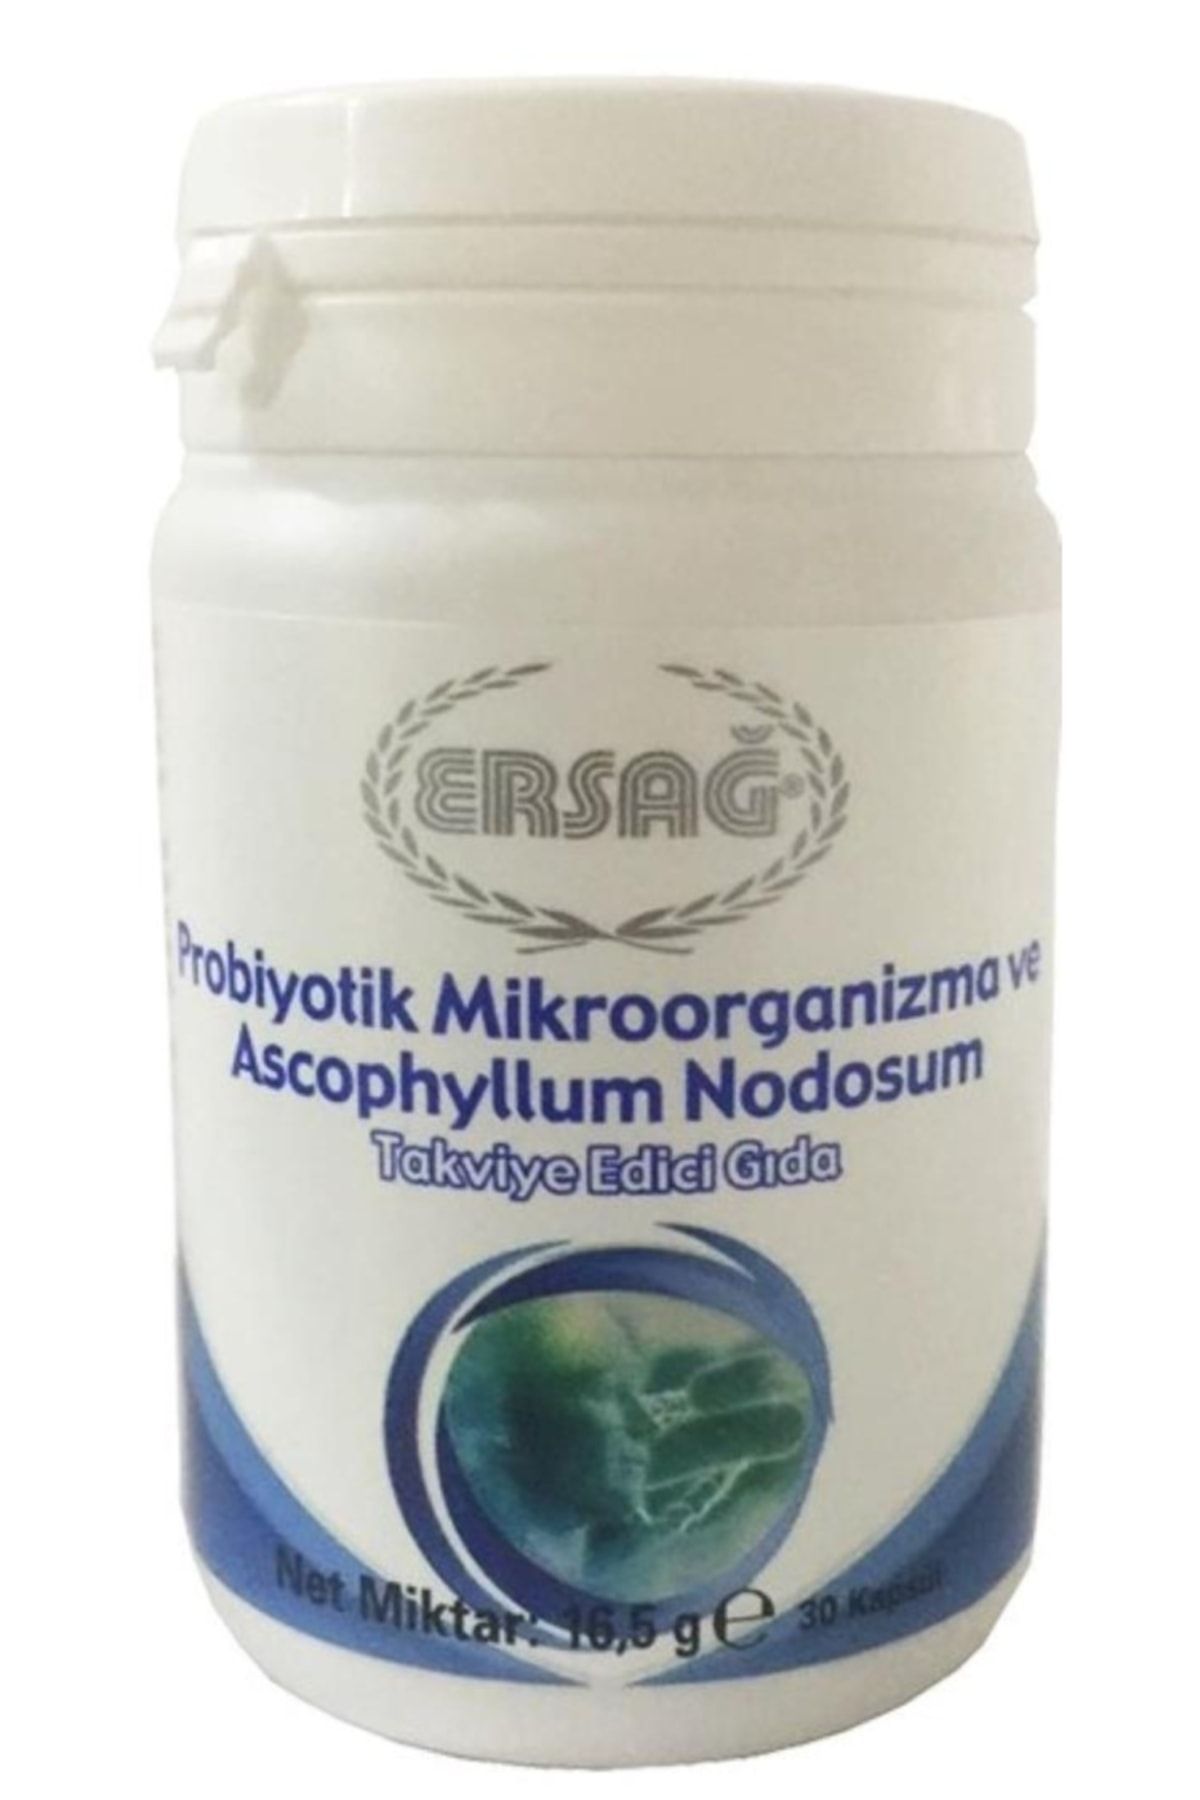 Ersağ Probiyotik Mikroorganizma Ve Ascophyllum Nodosum Içeren Gıda Takviyesi